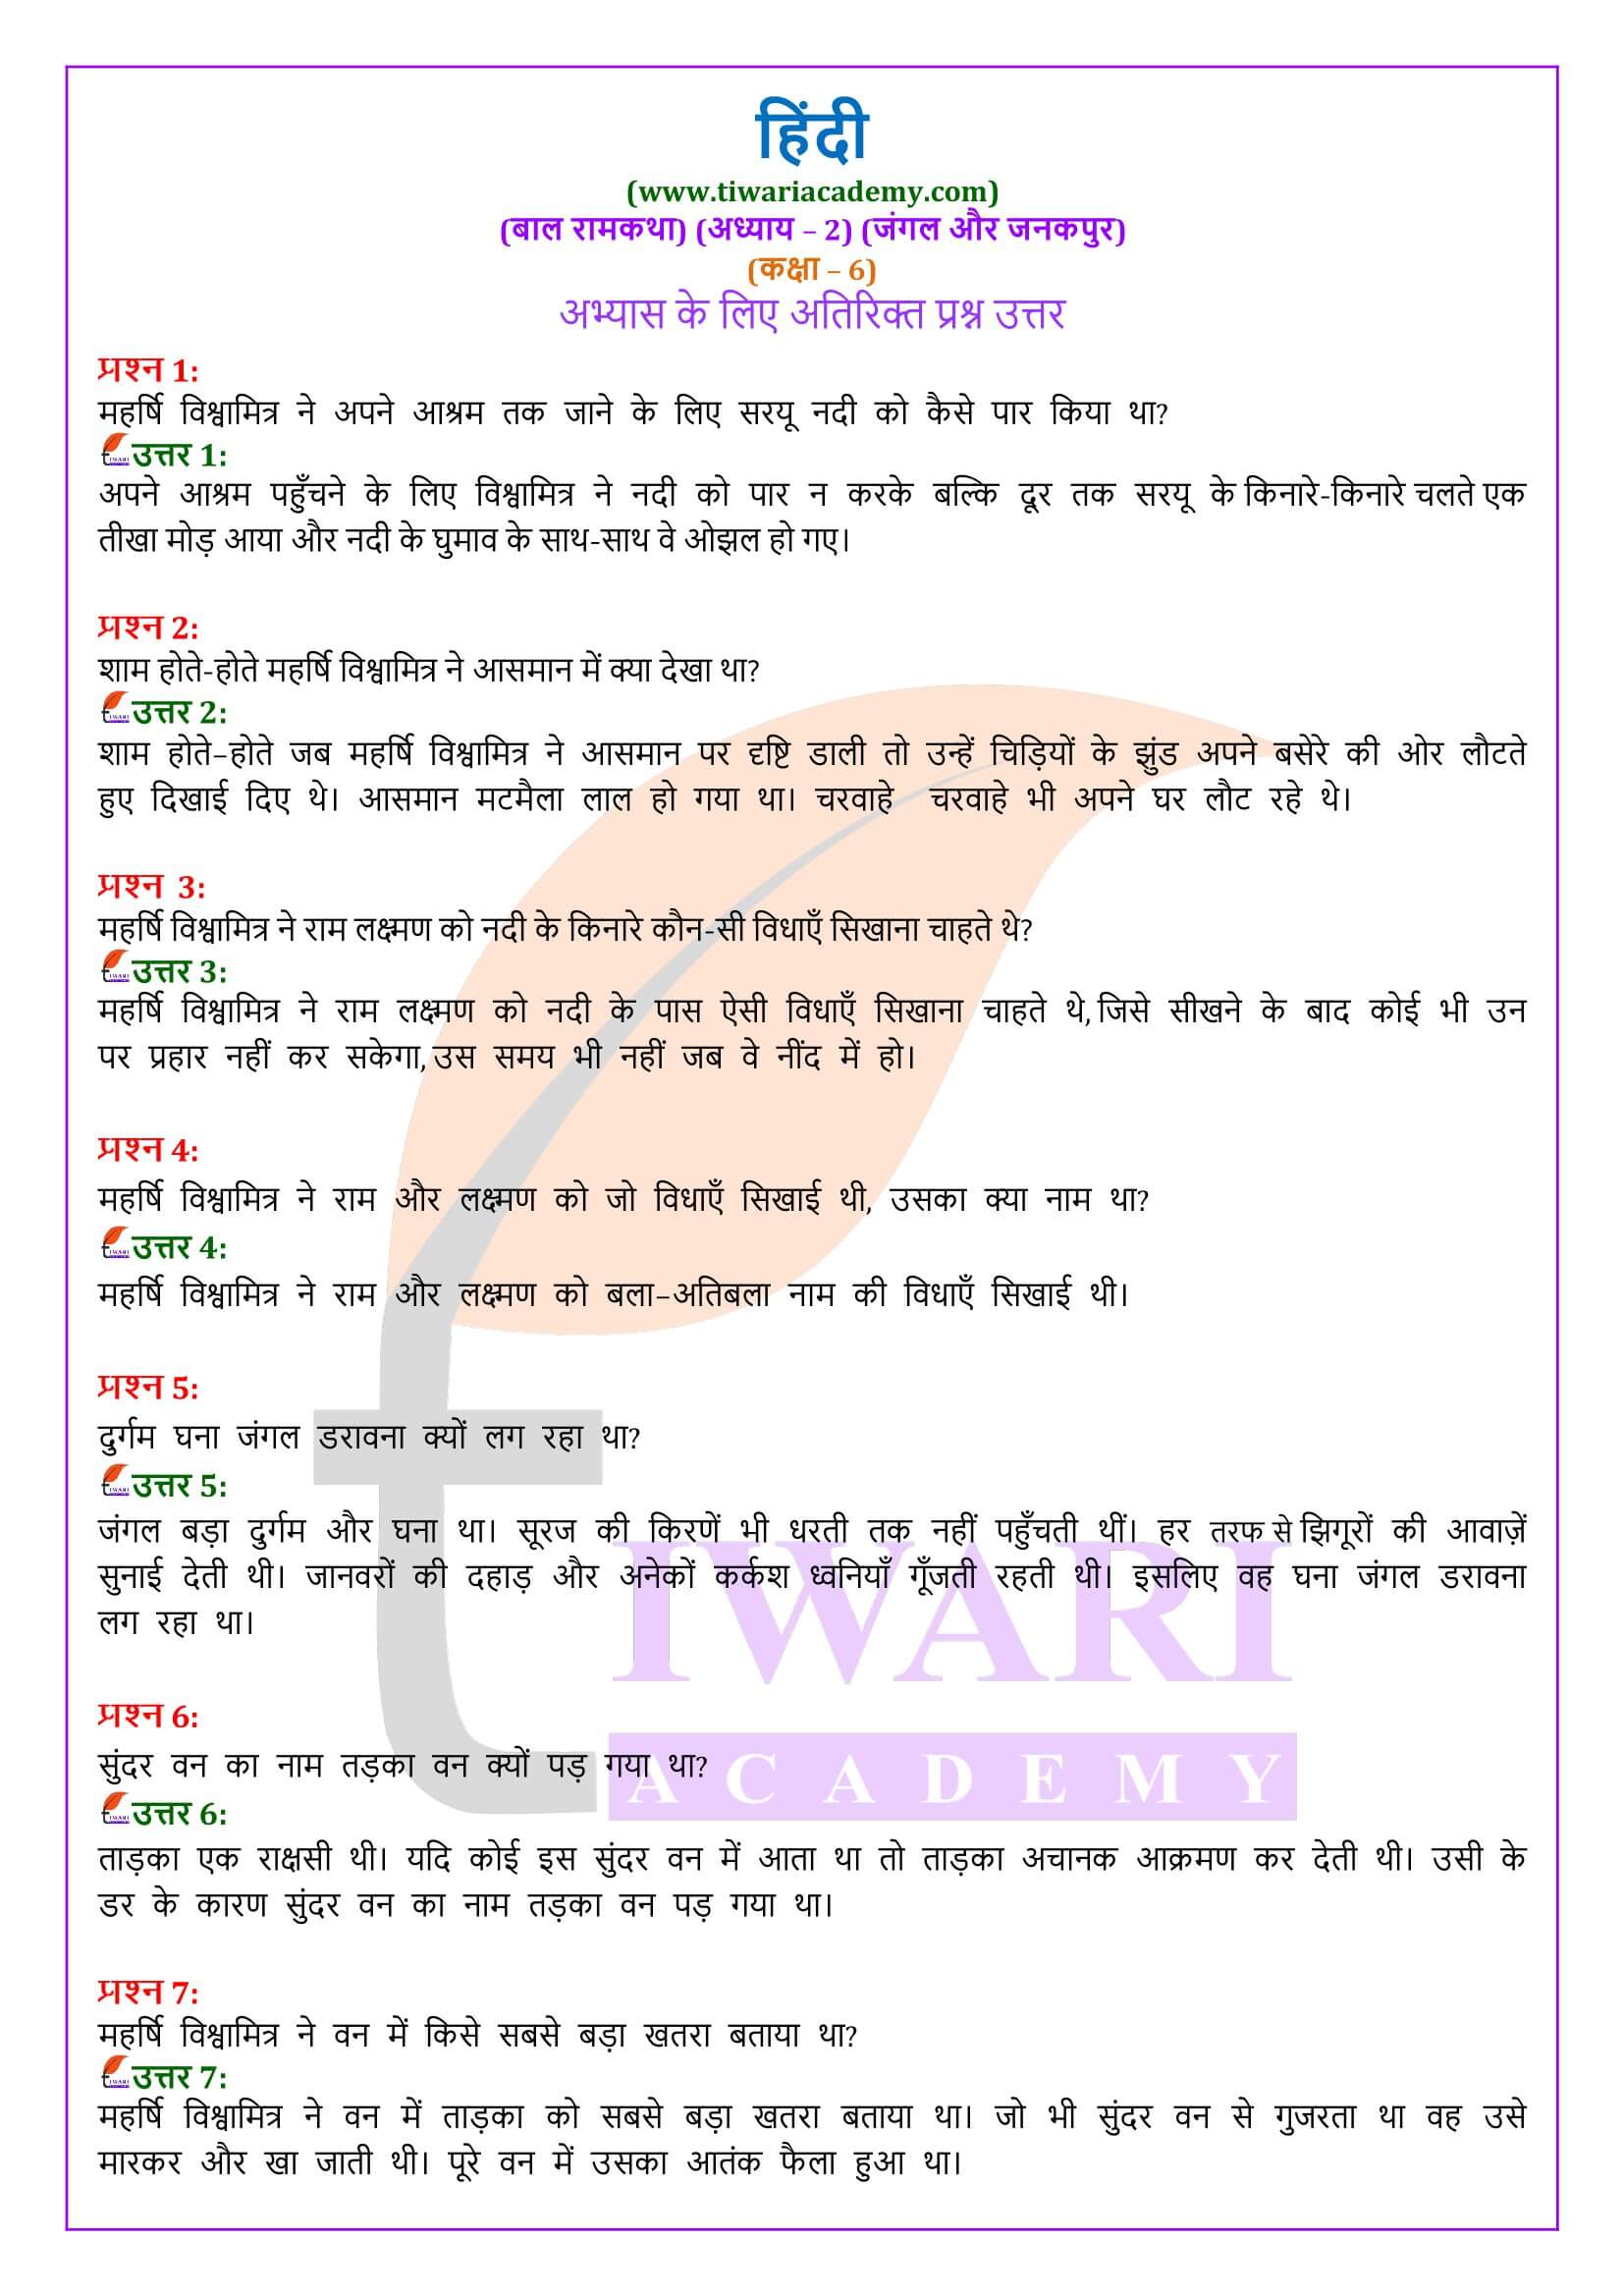 कक्षा 6 हिंदी बाल रामकथा अध्याय 2 जंगल और जनकपुर